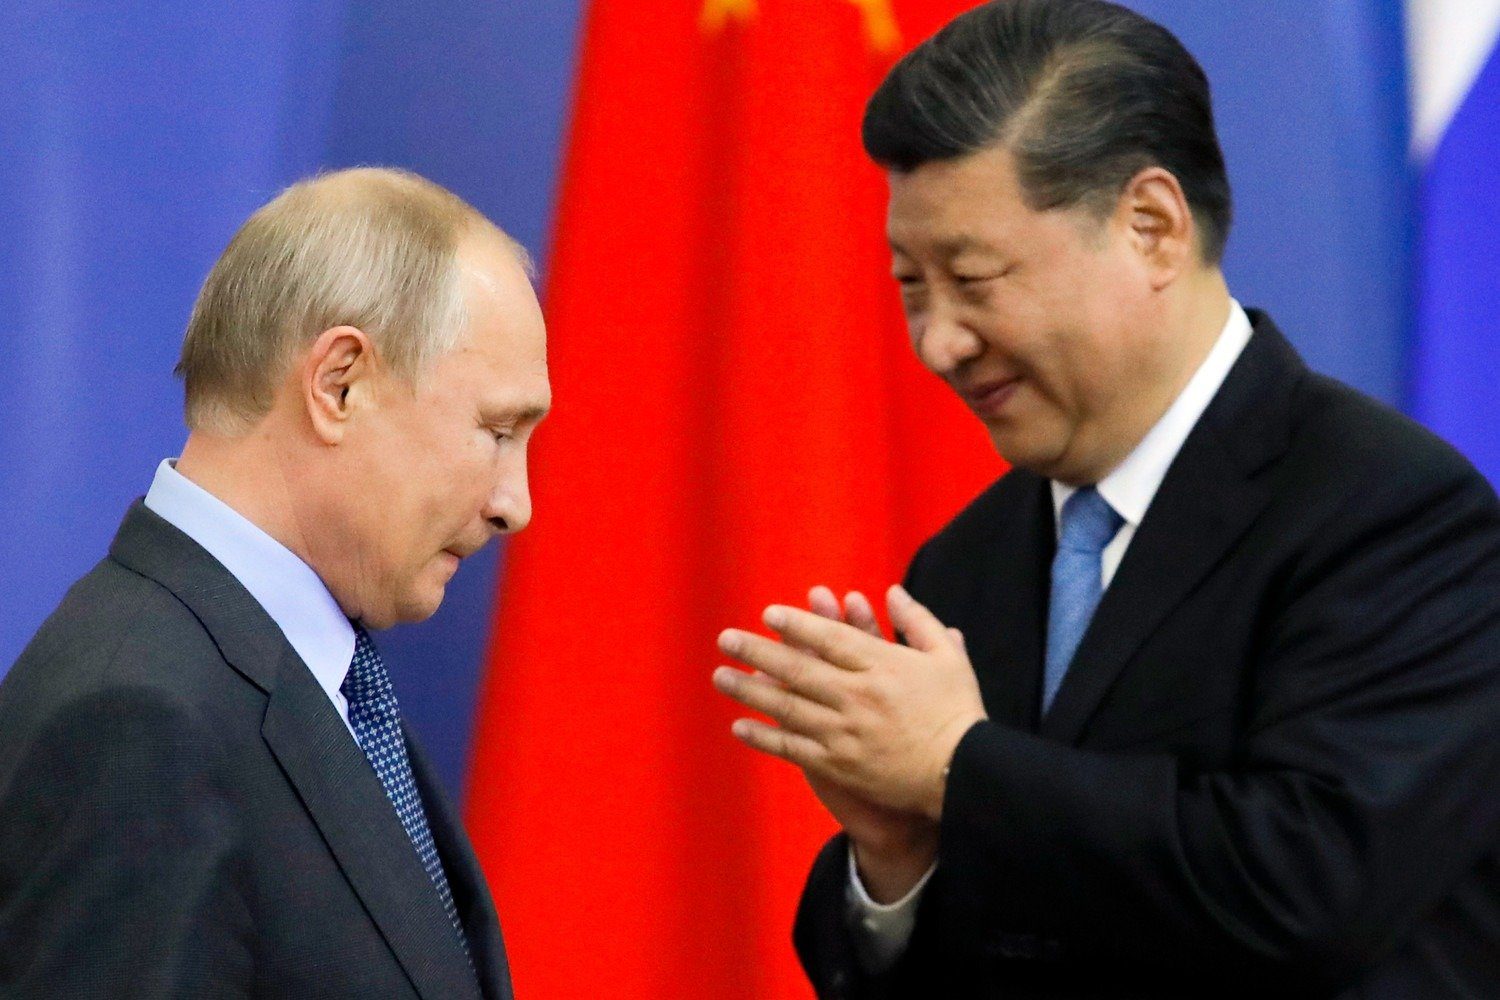 Киселев: КНР поможет Путину, когда он приползет на четвереньках ➤ Buzzday.info